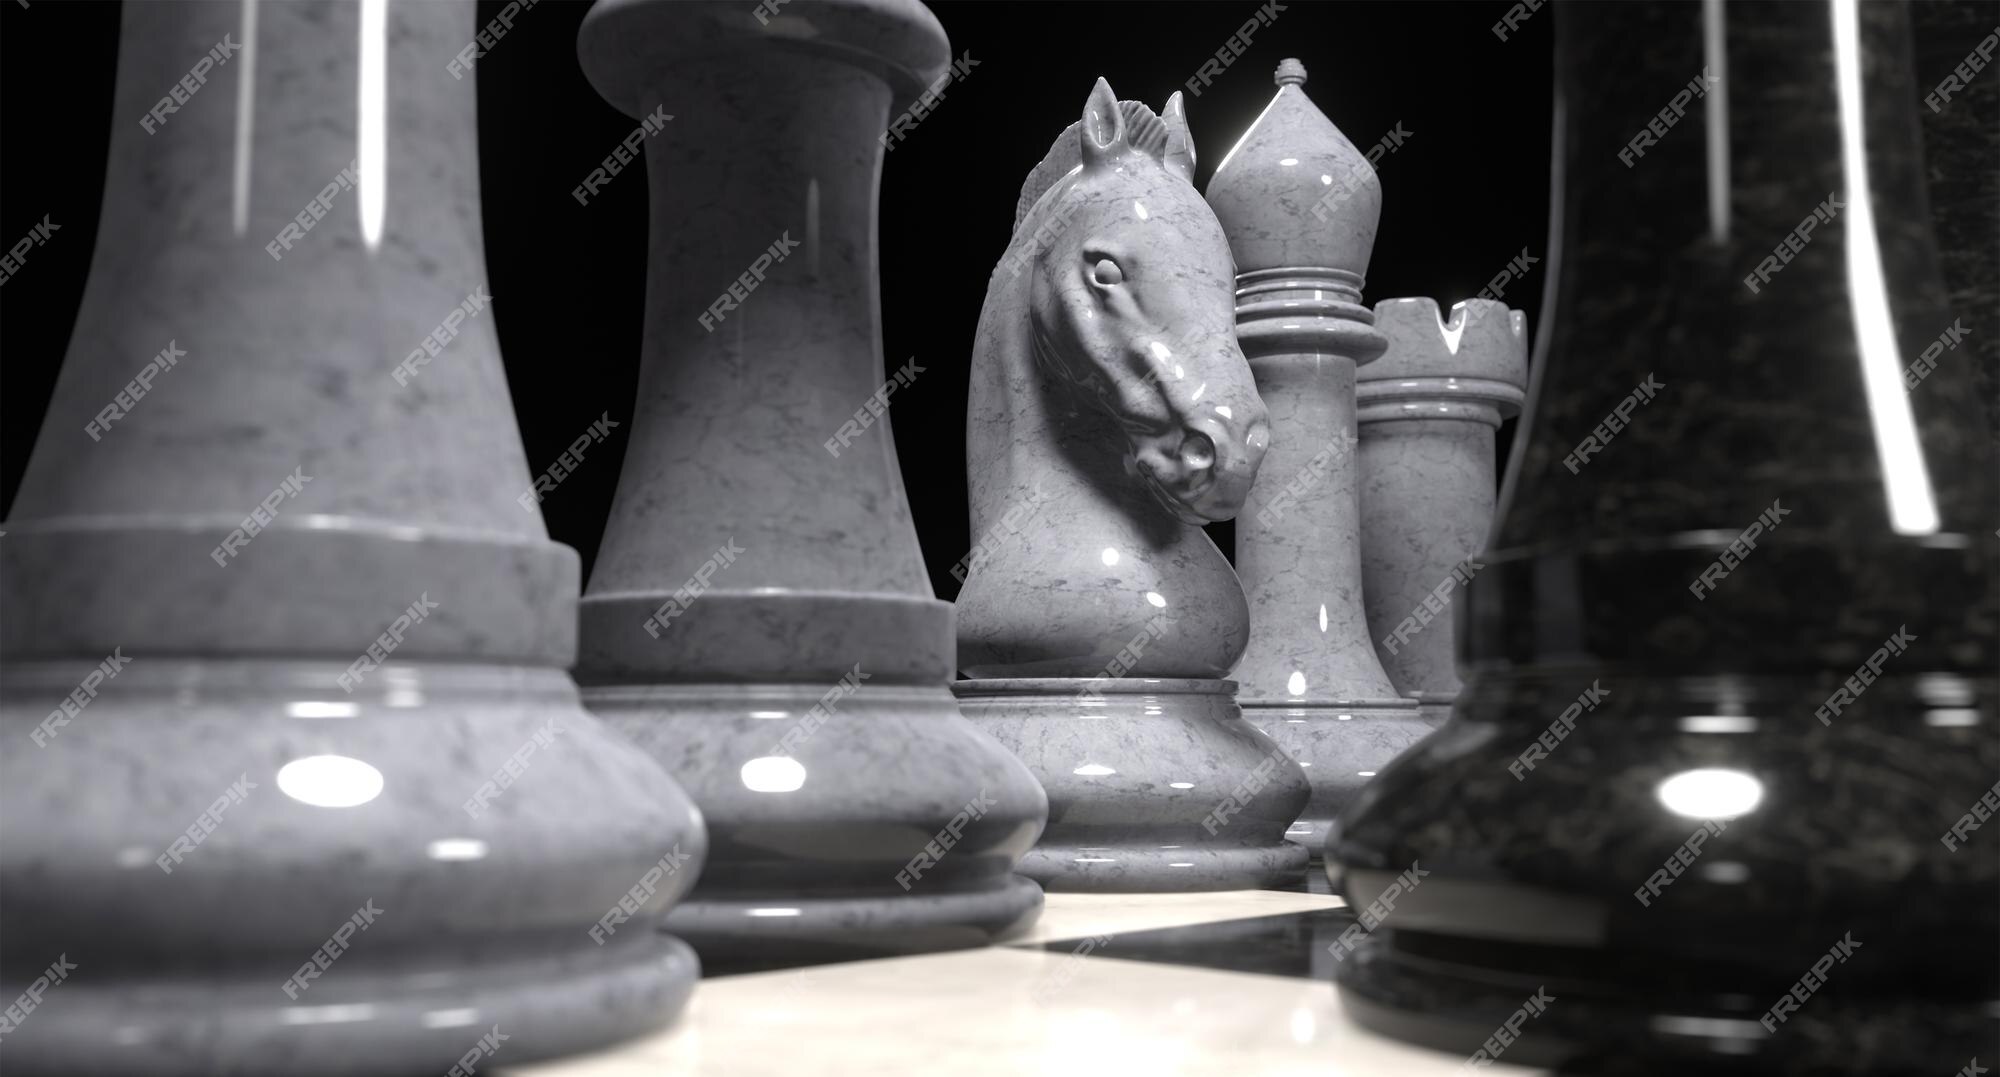 Renderização 3d de um jogo de xadrez peças de mármore em um tabuleiro de  xadrez